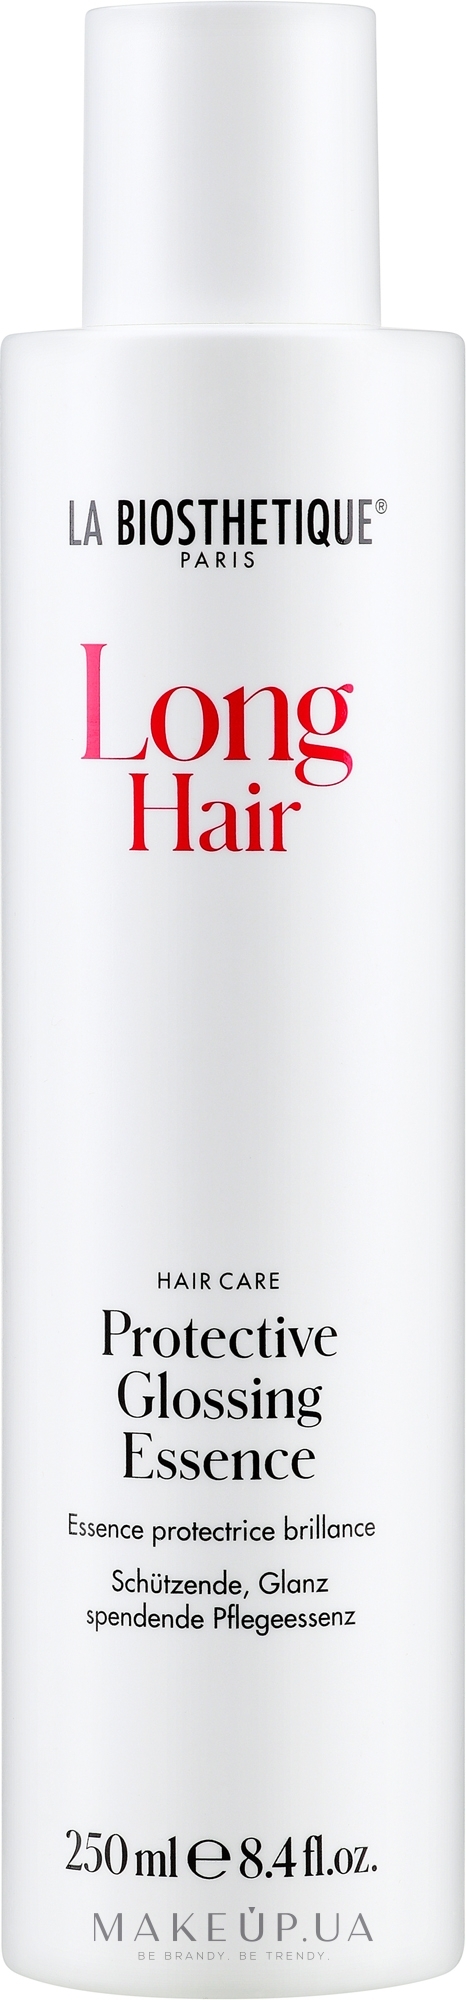 Защитная эссенция для длинных волос - La Biosthetique Long Hair Protective Glossing Essence — фото 250ml